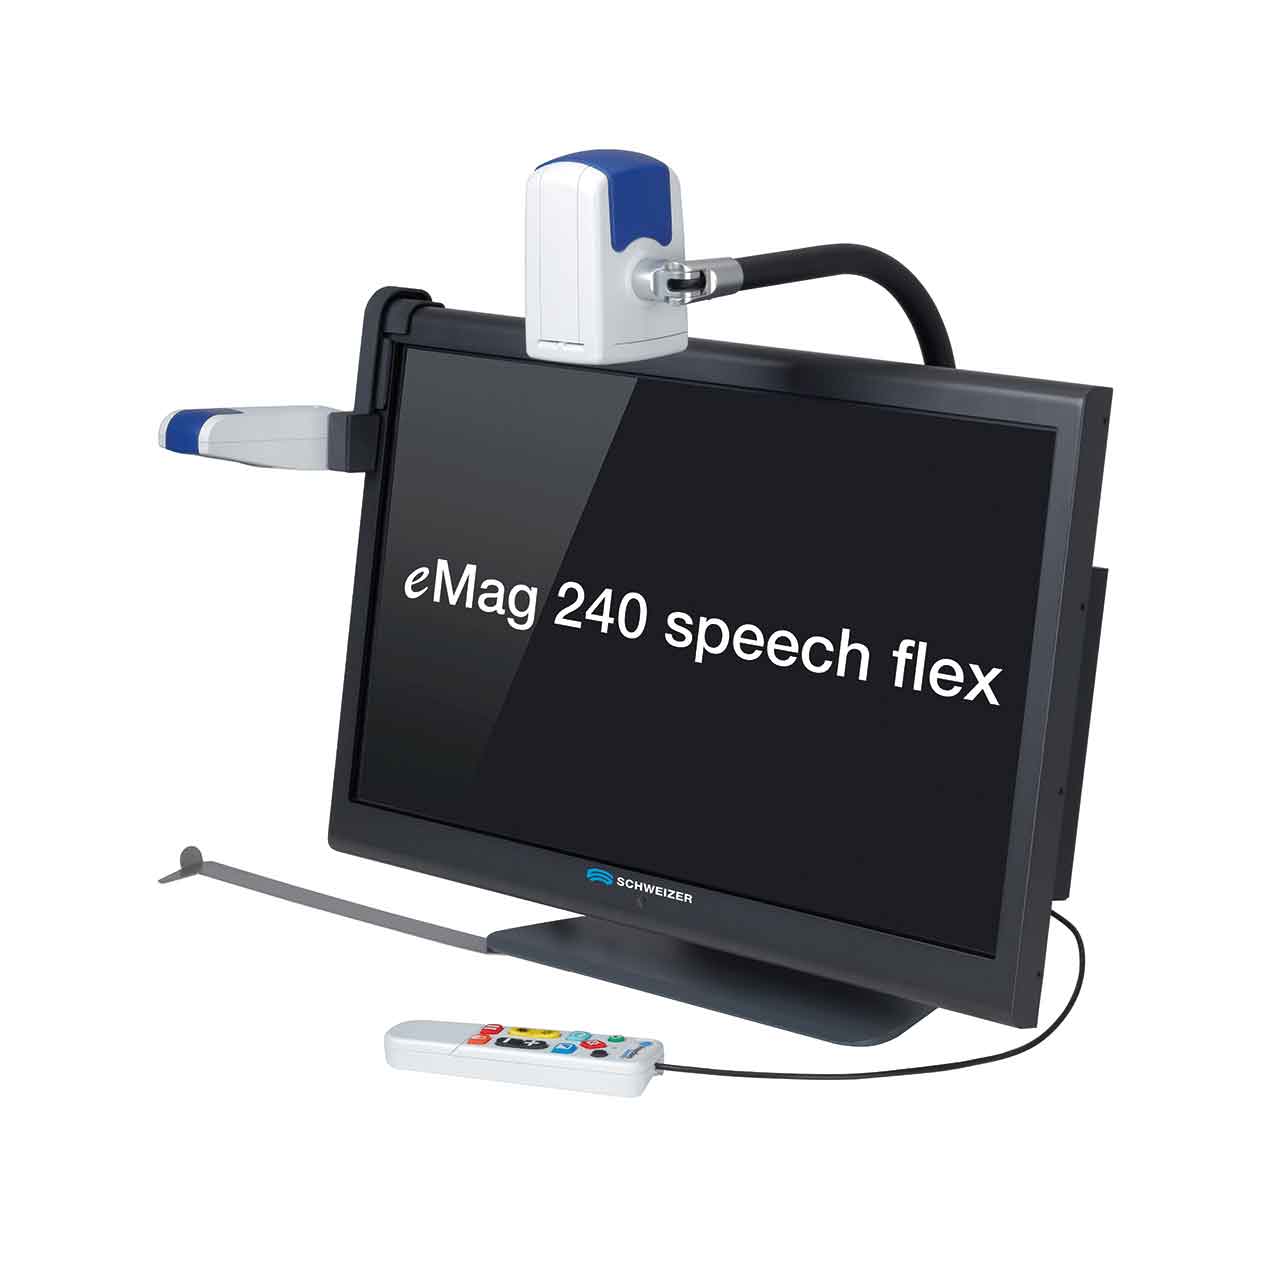 Schweizer eMag 240 speech flex